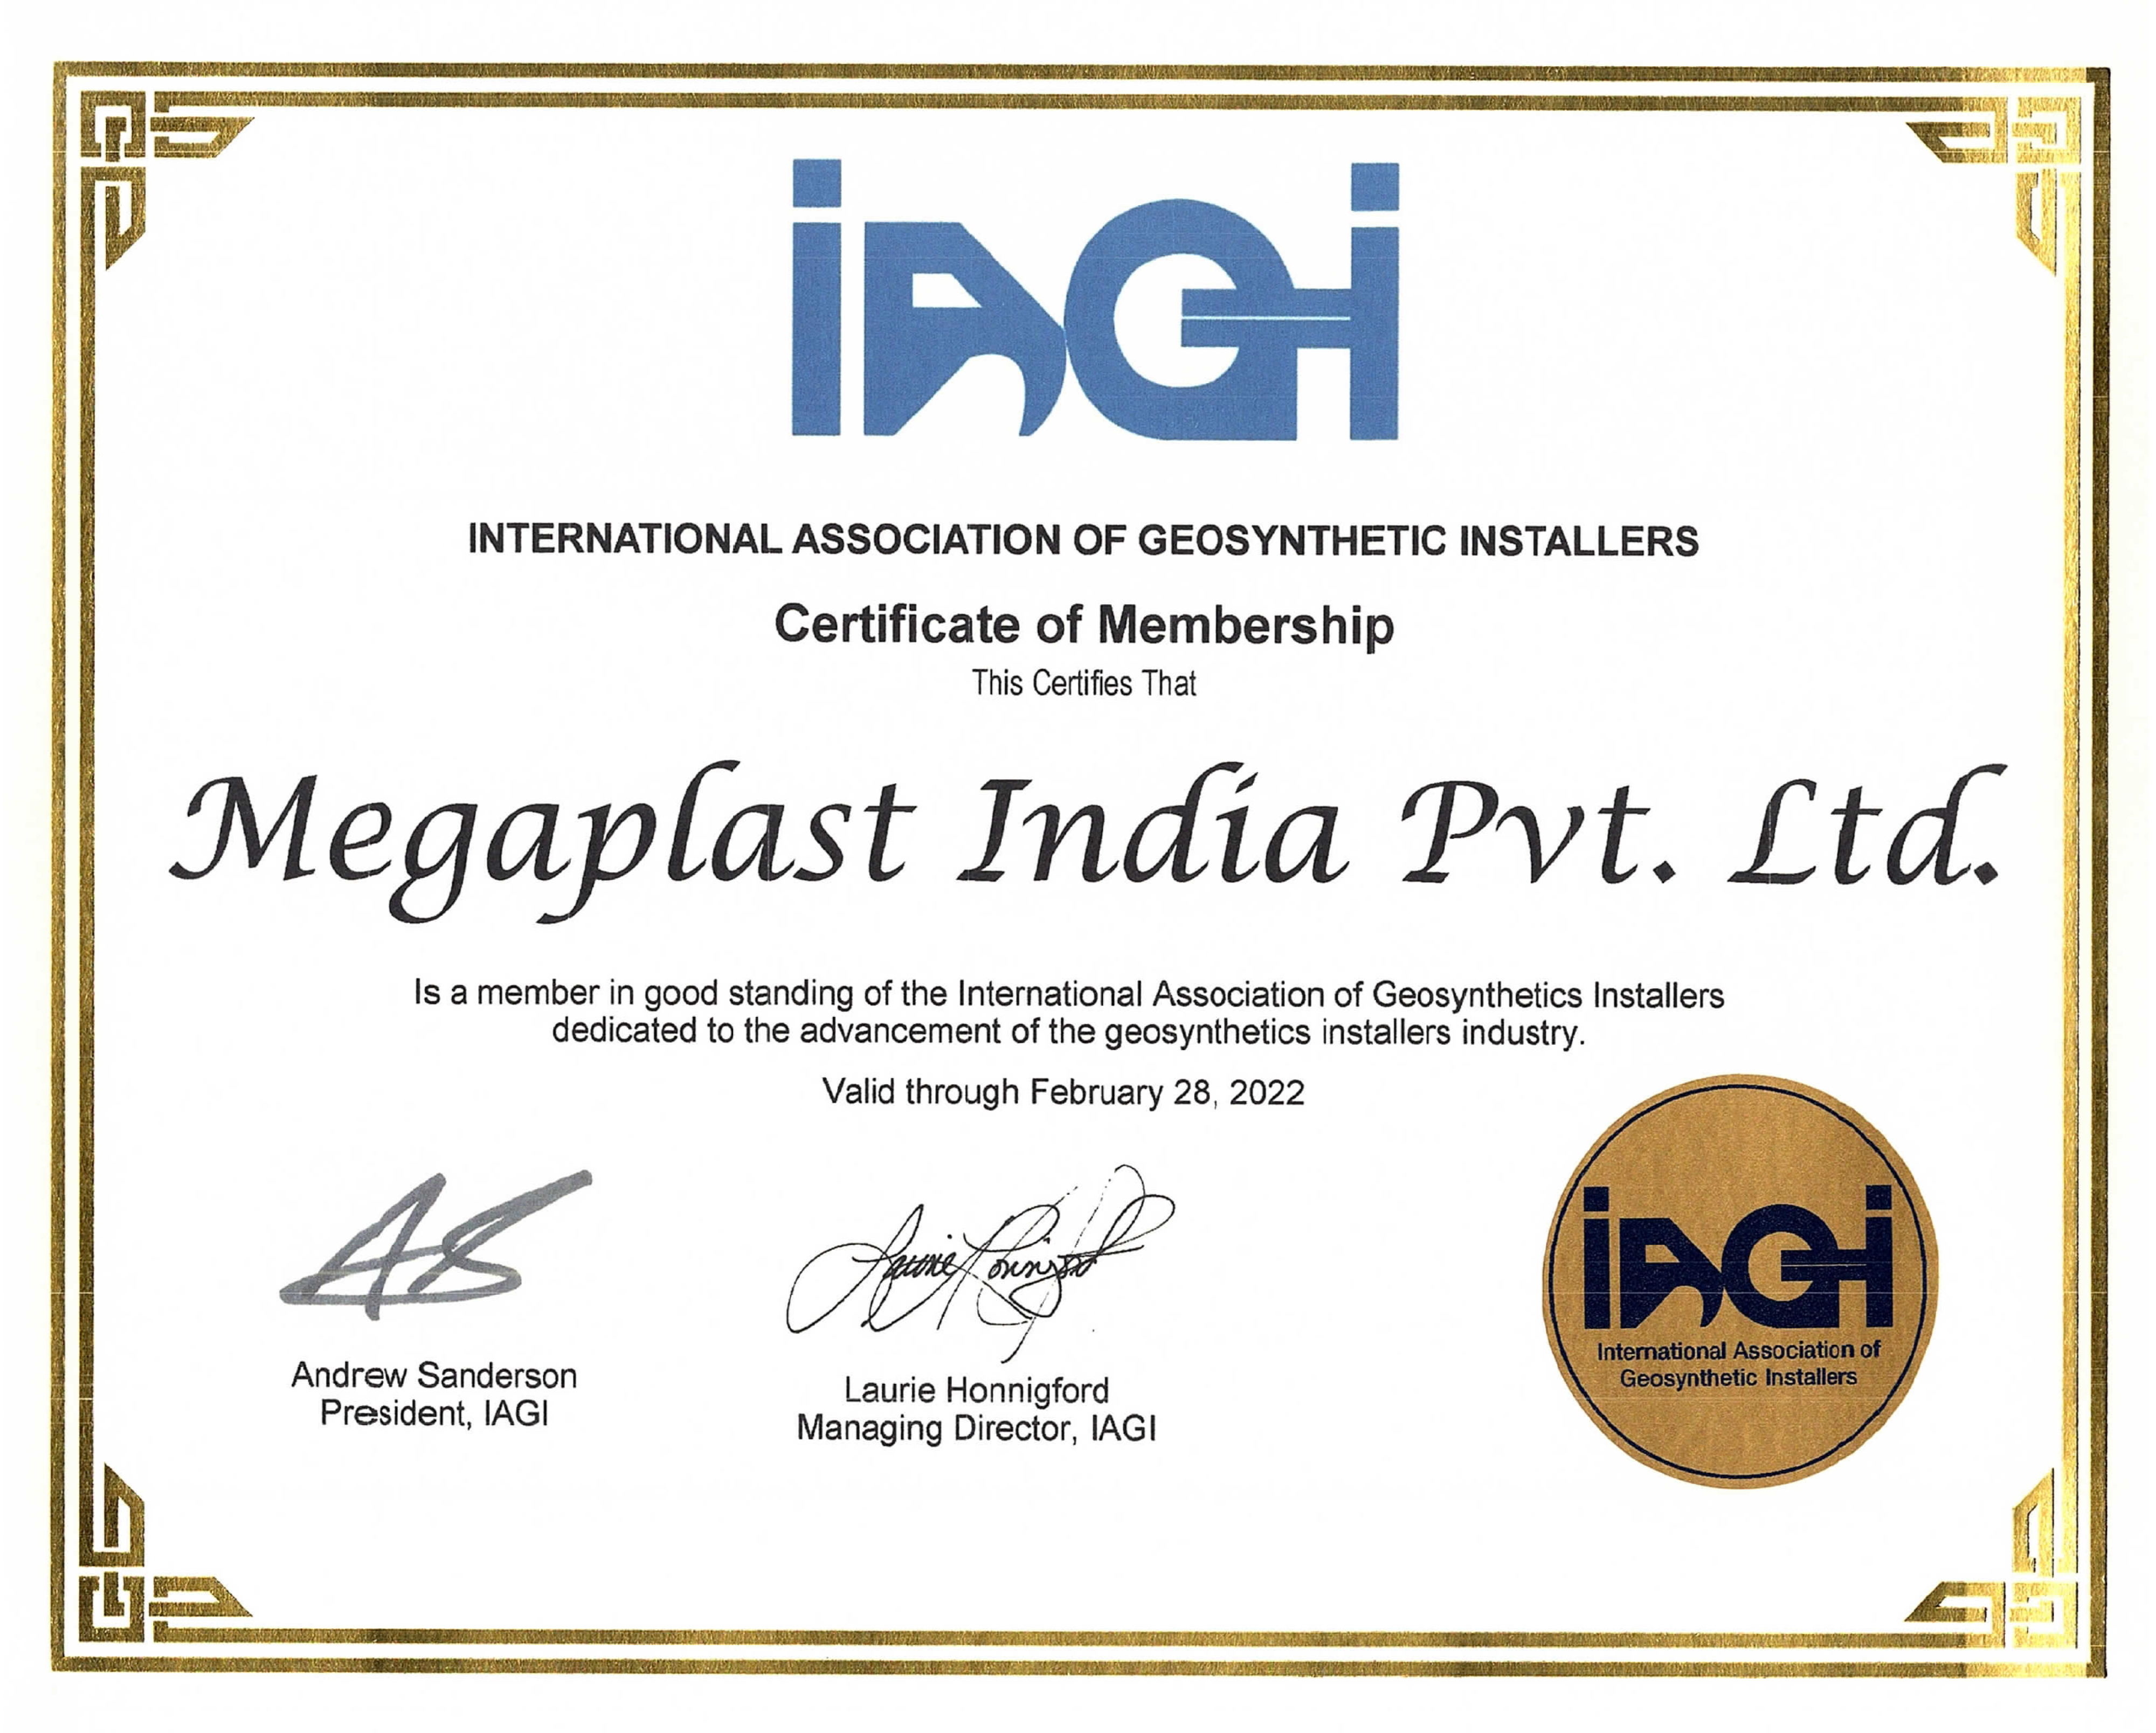 Megaplast is a member of IAGI